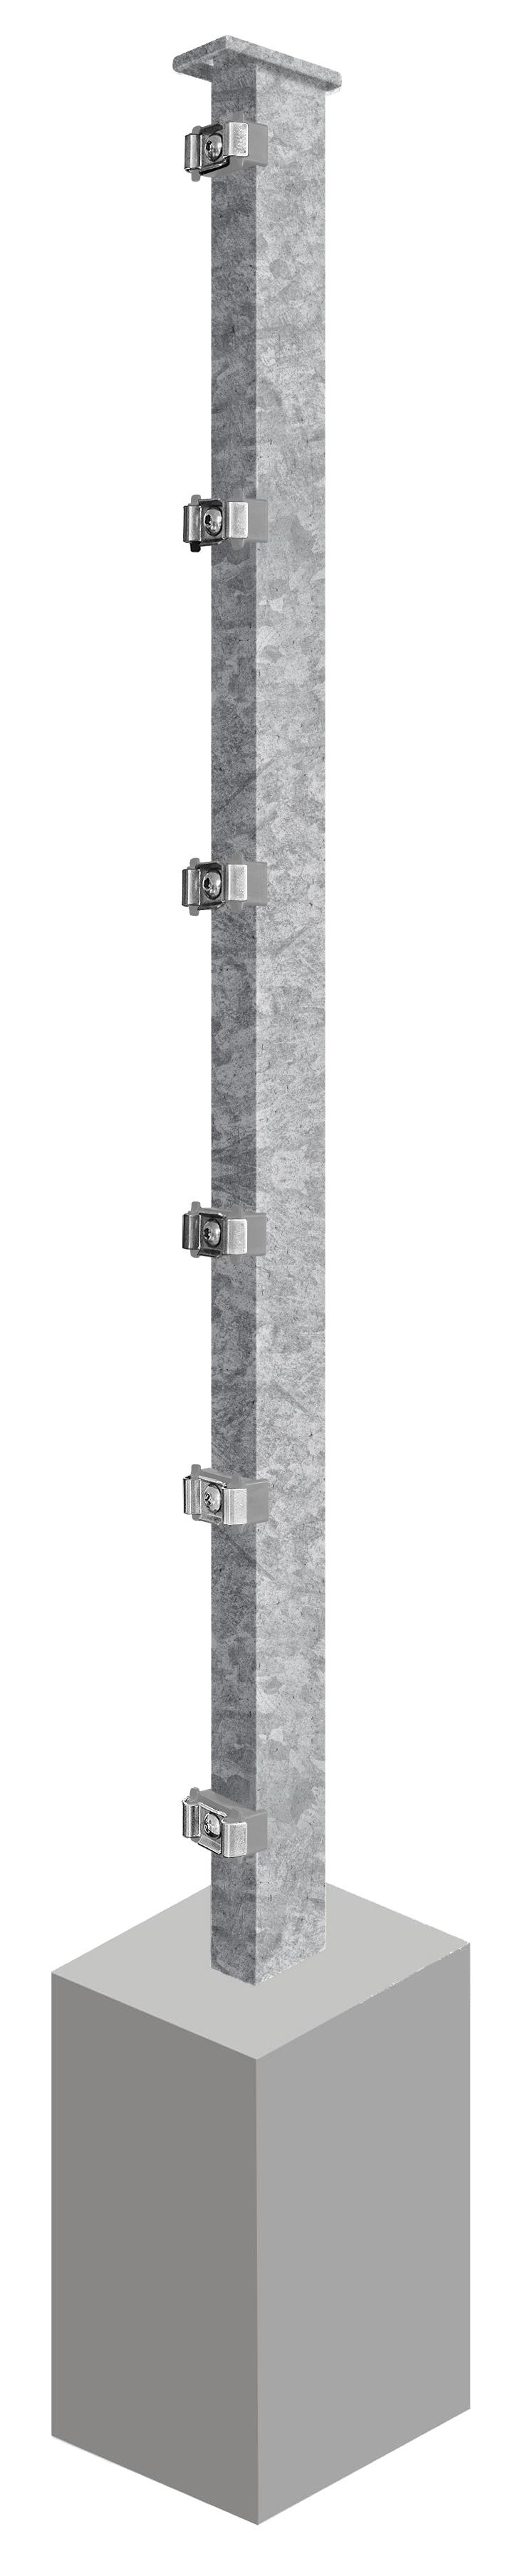 Pfosten System AC-Typ PSLF, für Zaunhöhe 2.030 mm